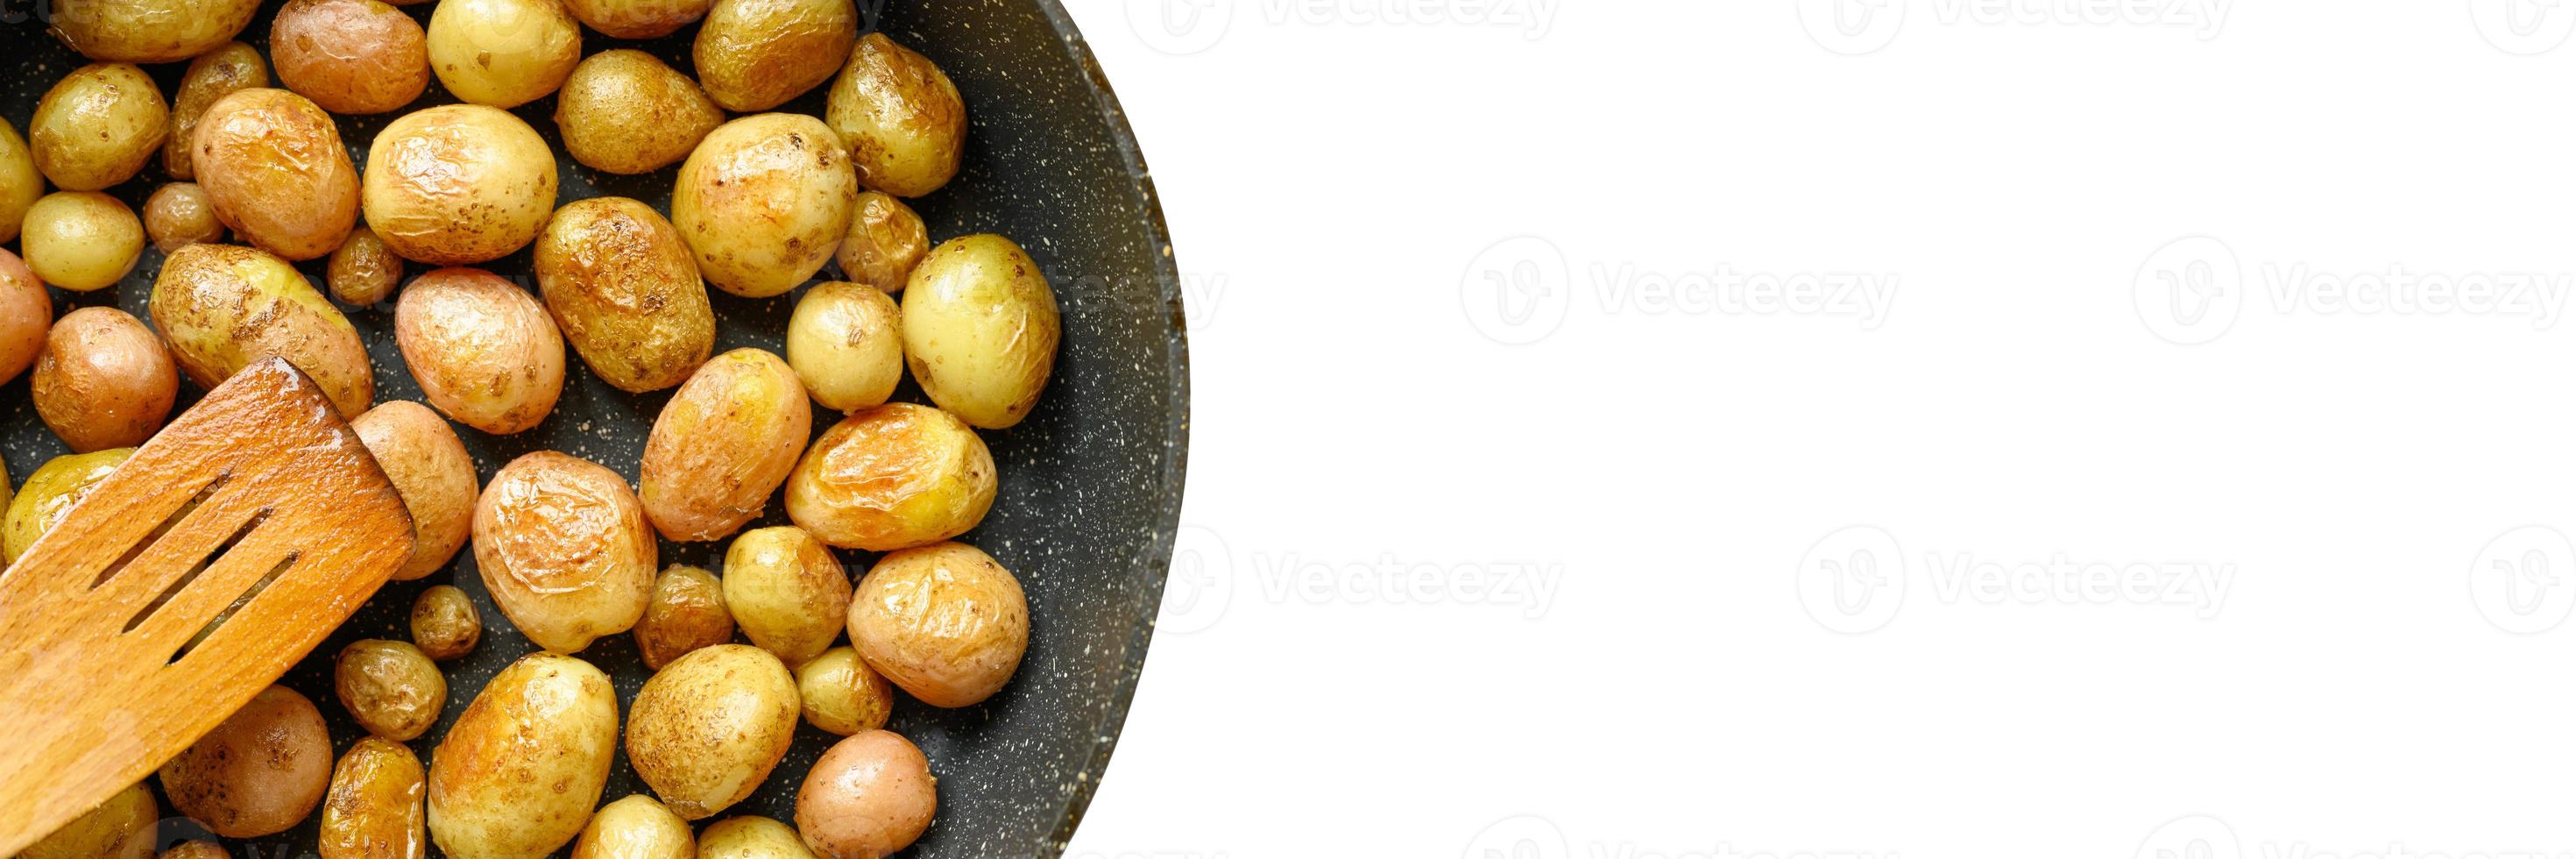 patatas asadas doradas con piel foto